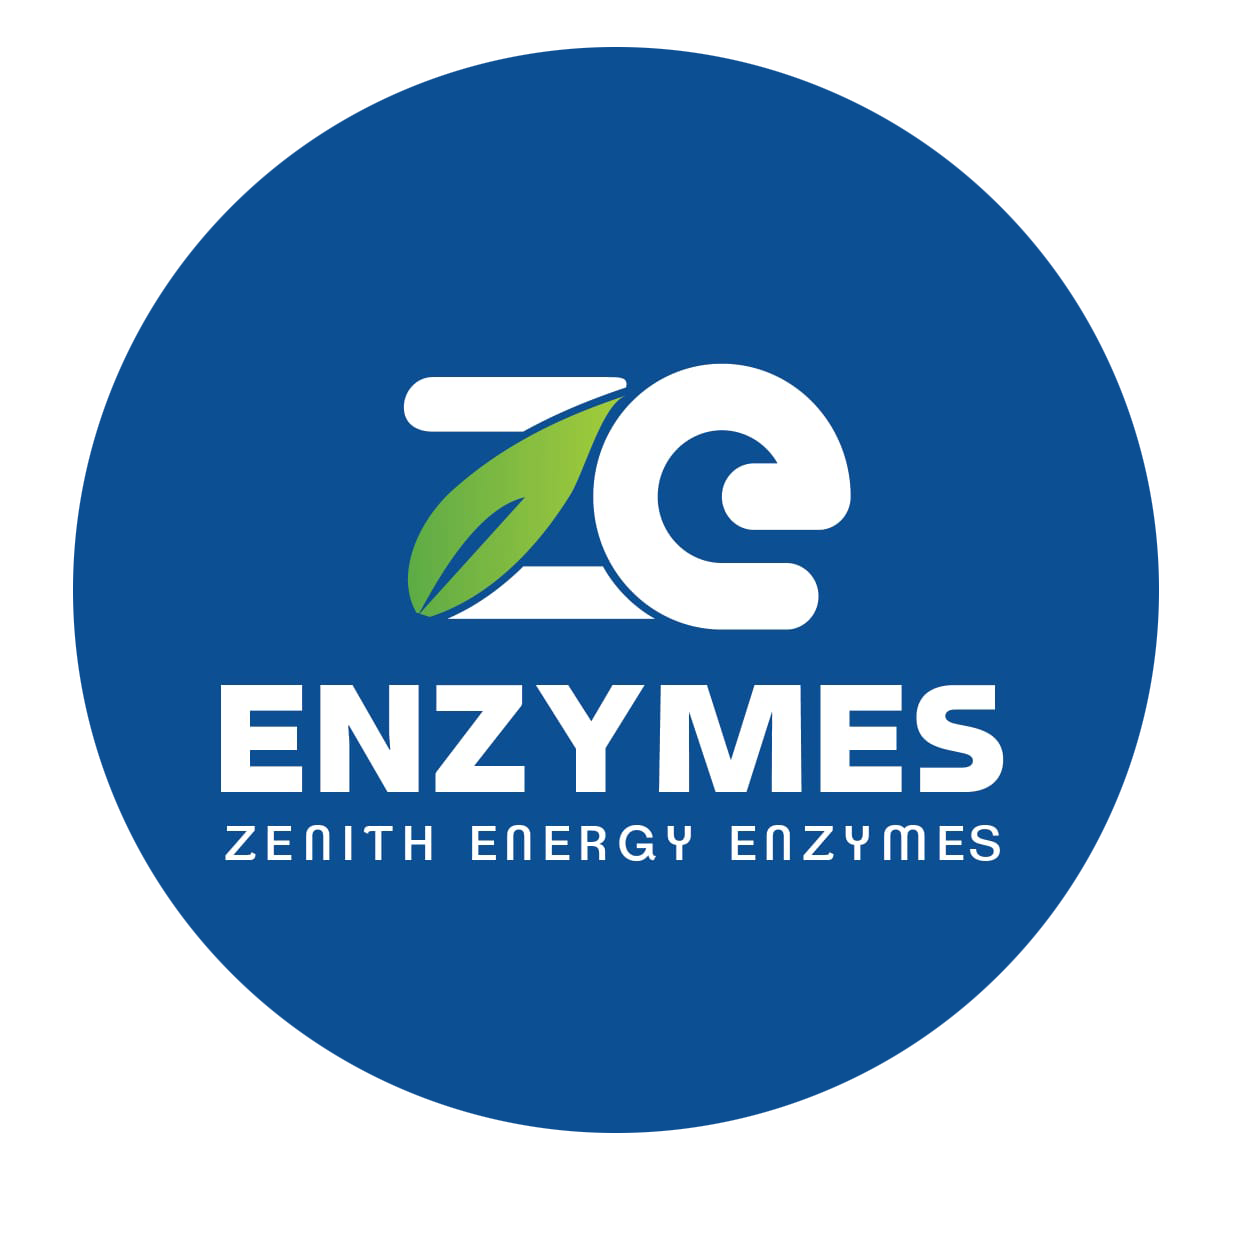 Zenith Energy Enzymes